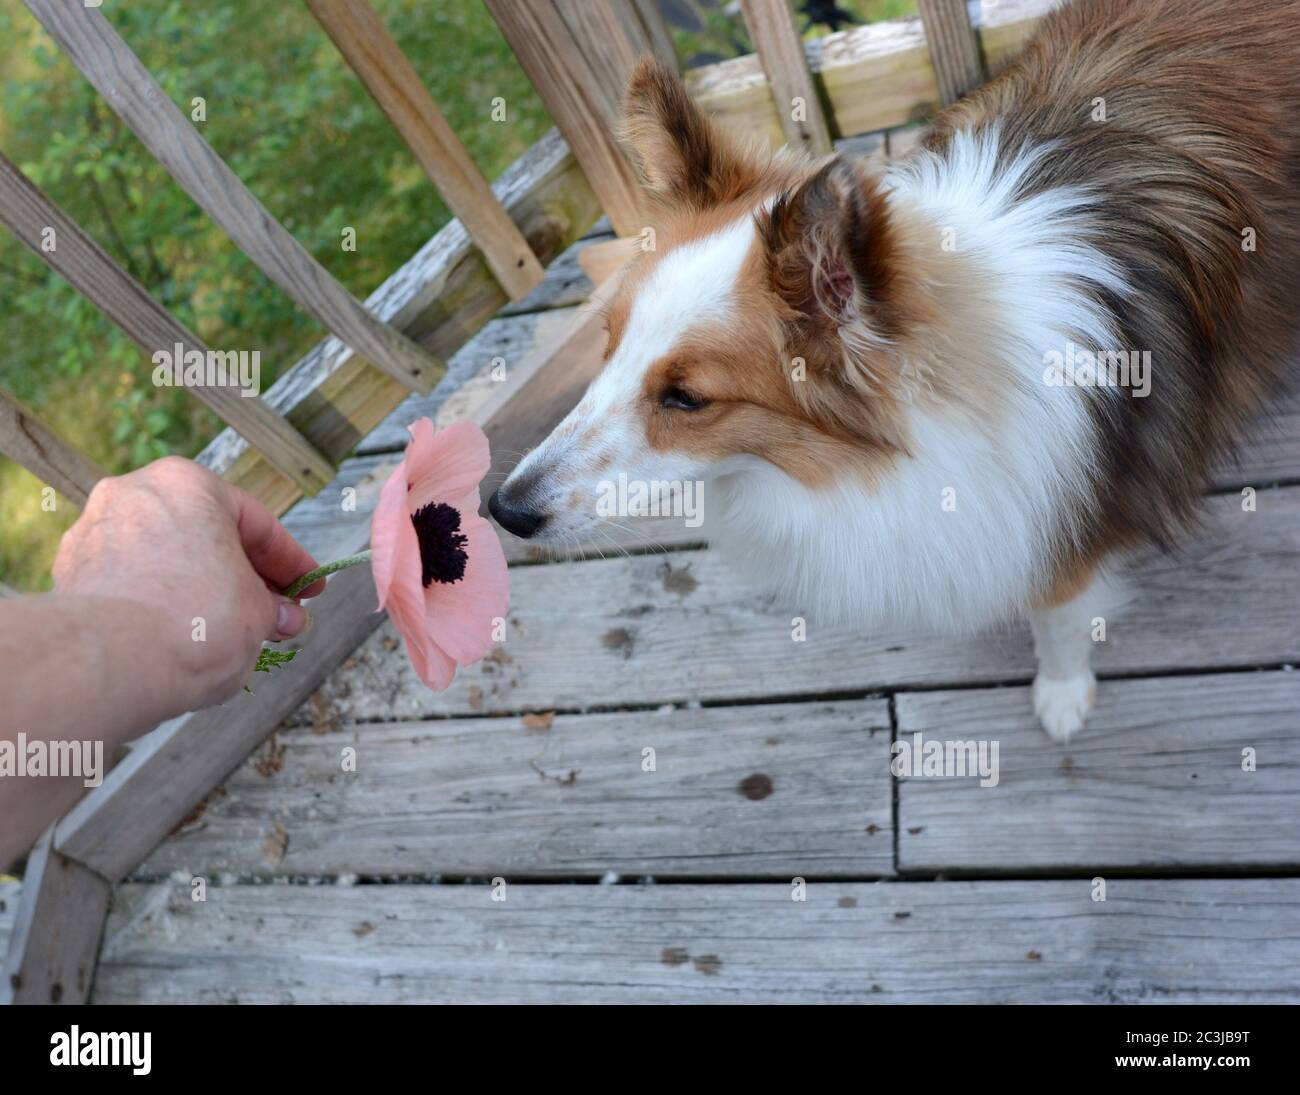 Un jeune chien mignon sent une fleur de pavot tenue dans la main d'une femme. Chien de berger Shetland (sheltie). Banque D'Images